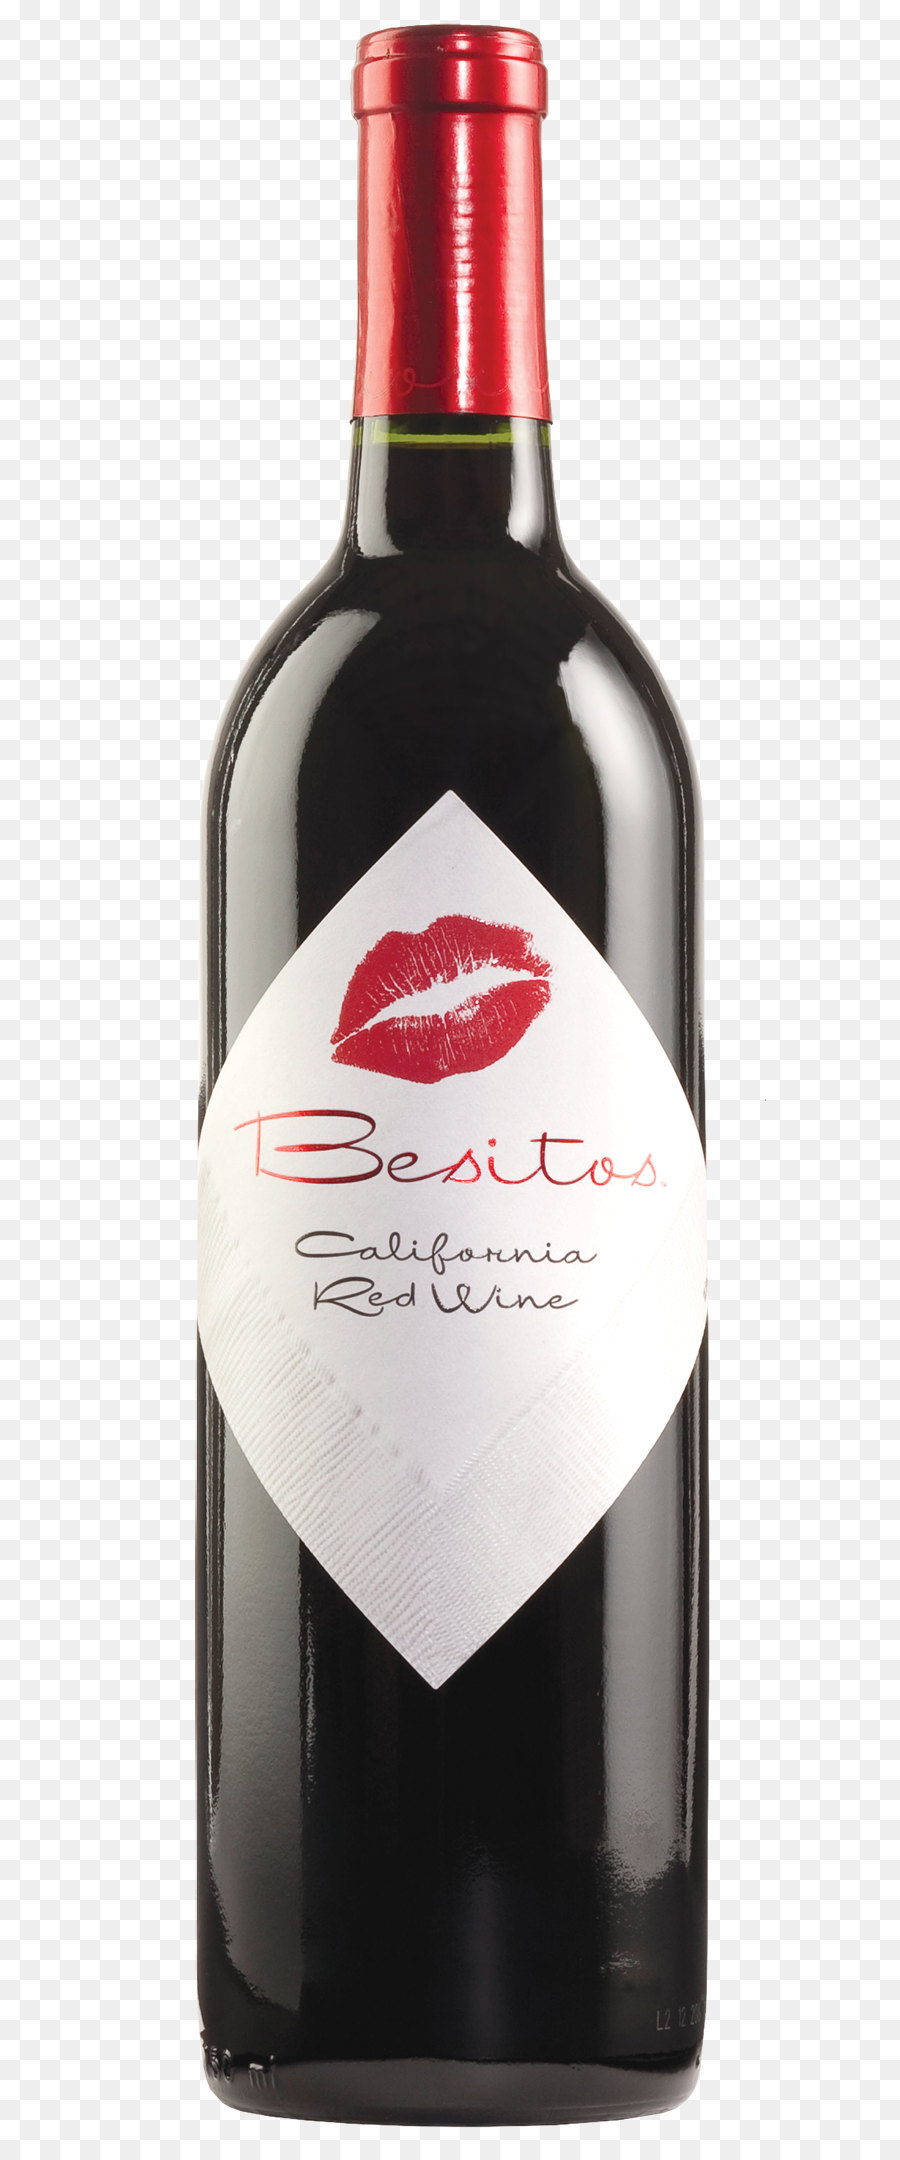 Vino rosso, Birra, Distillati bevanda Moscato - Bottiglia PNG immagine, gratuito, scaricare l'immagine della bottiglia